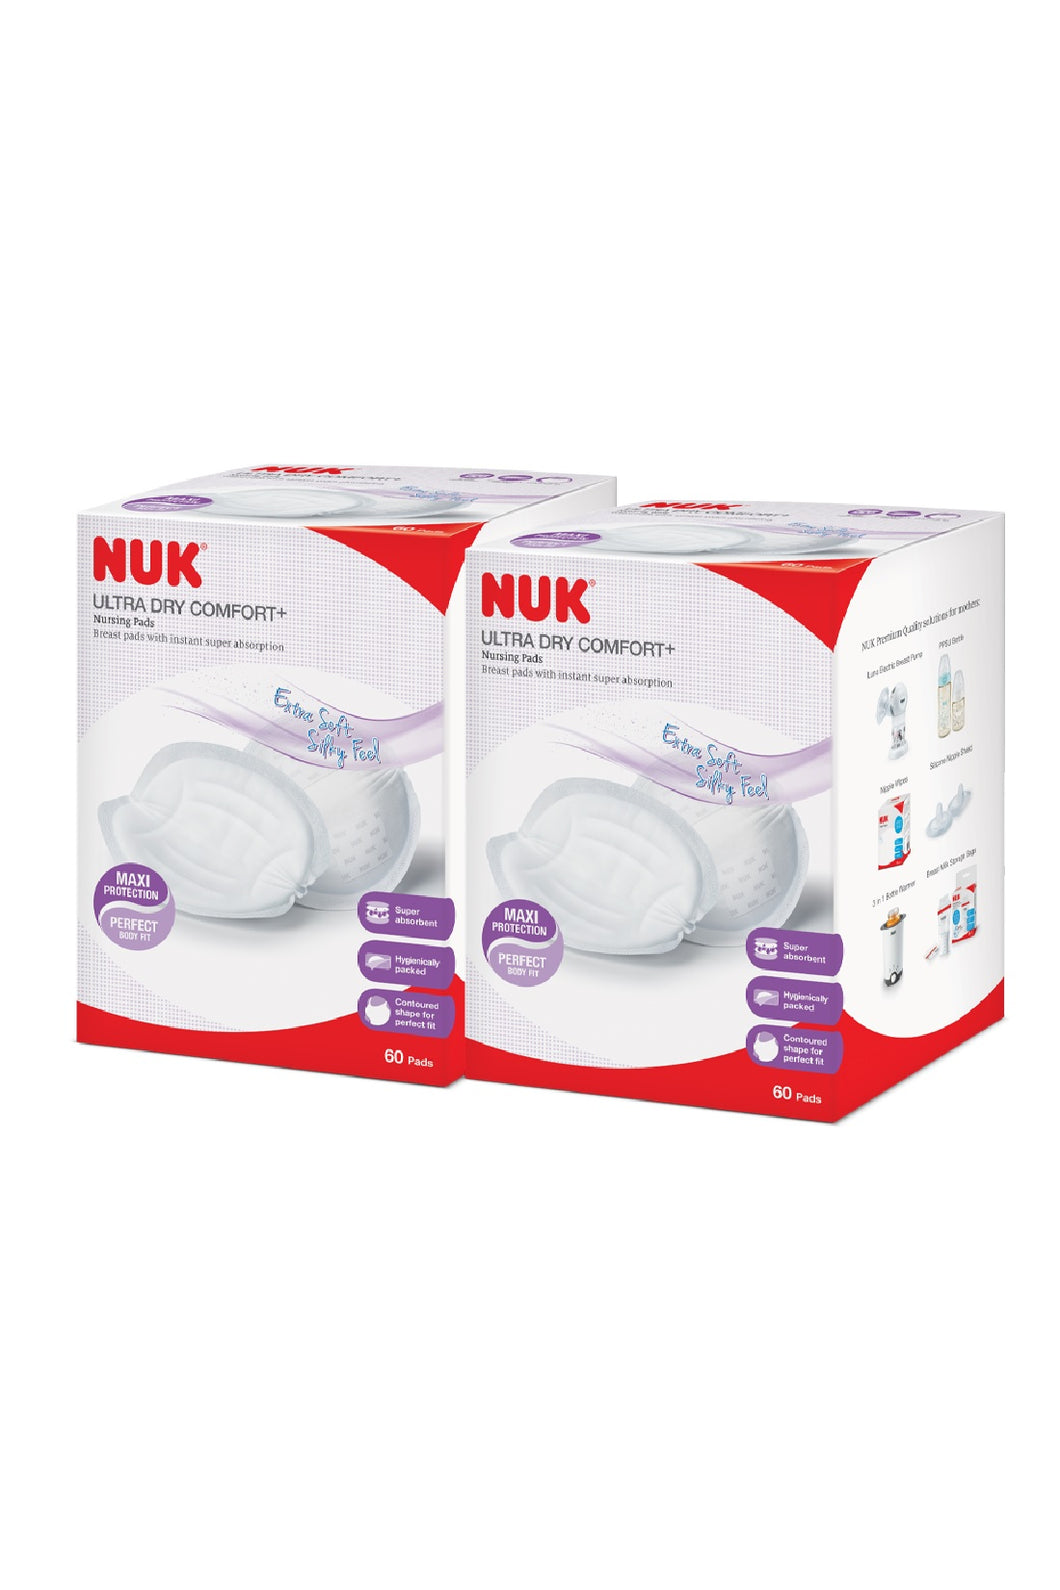 NUK Ultra Dry Comfort Nursing Pads 2 Pack 1